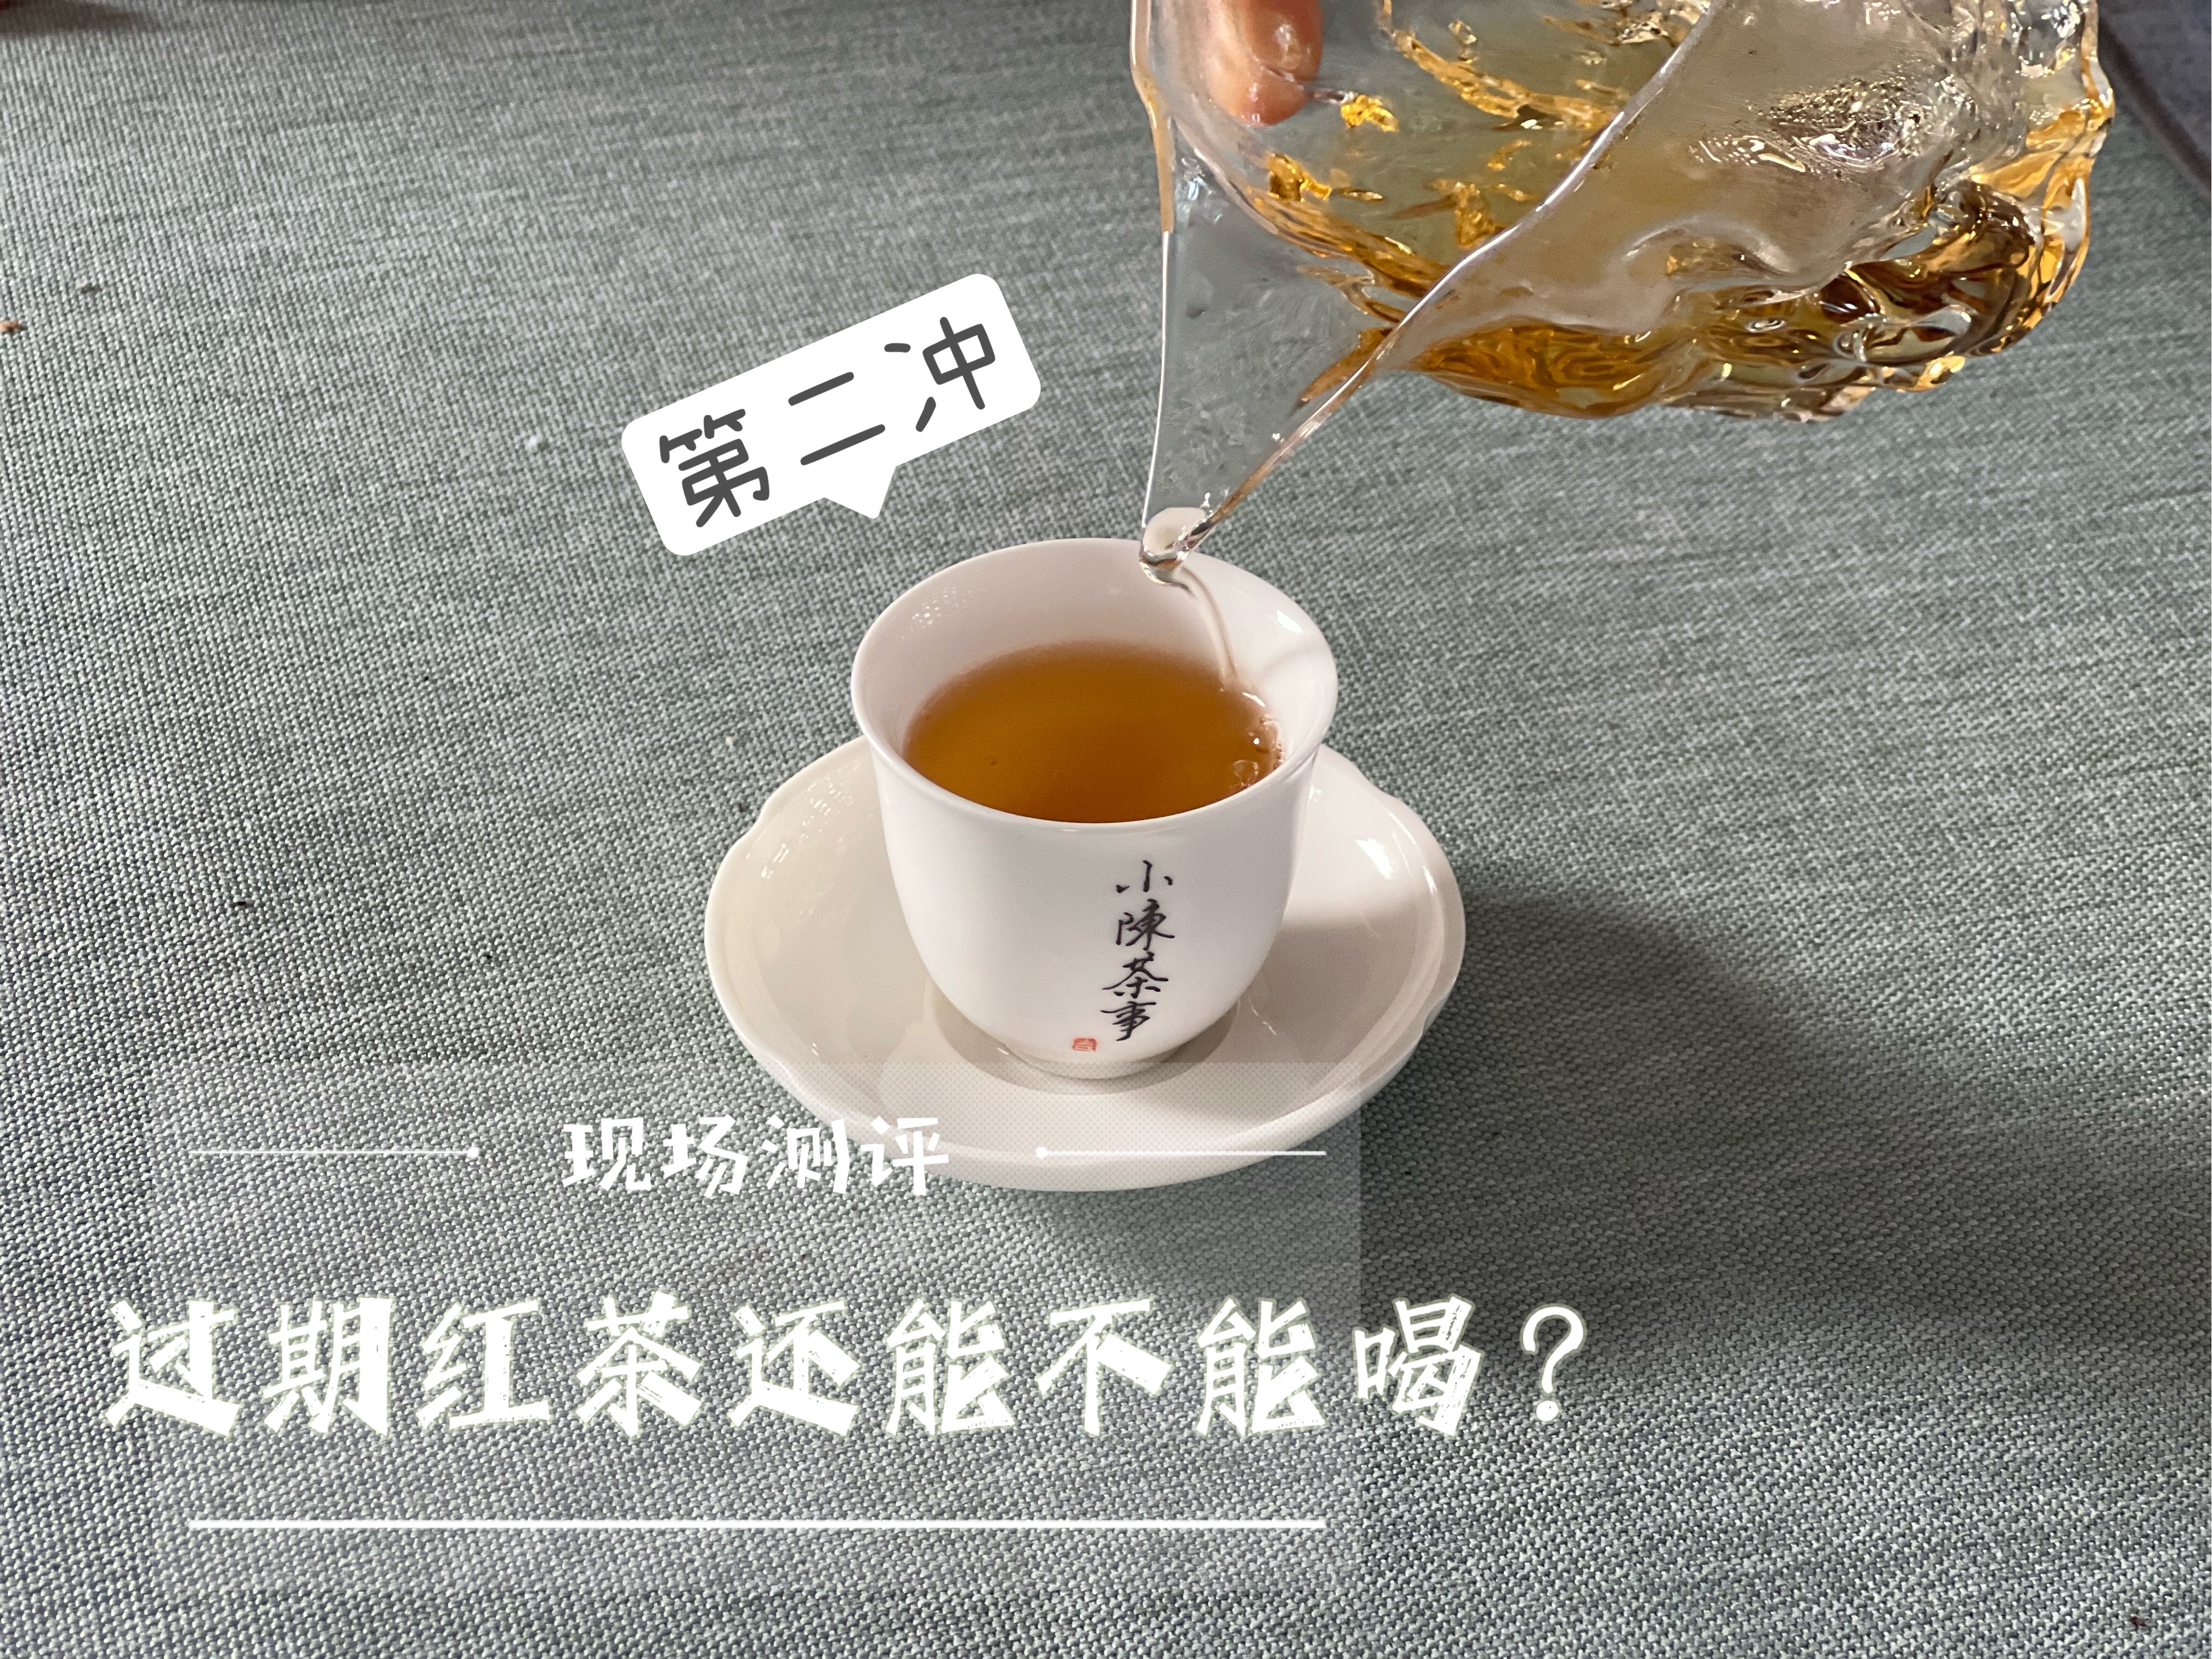 1年、3年、10000年，无数人好奇的问题，红茶保质期究竟是多久？